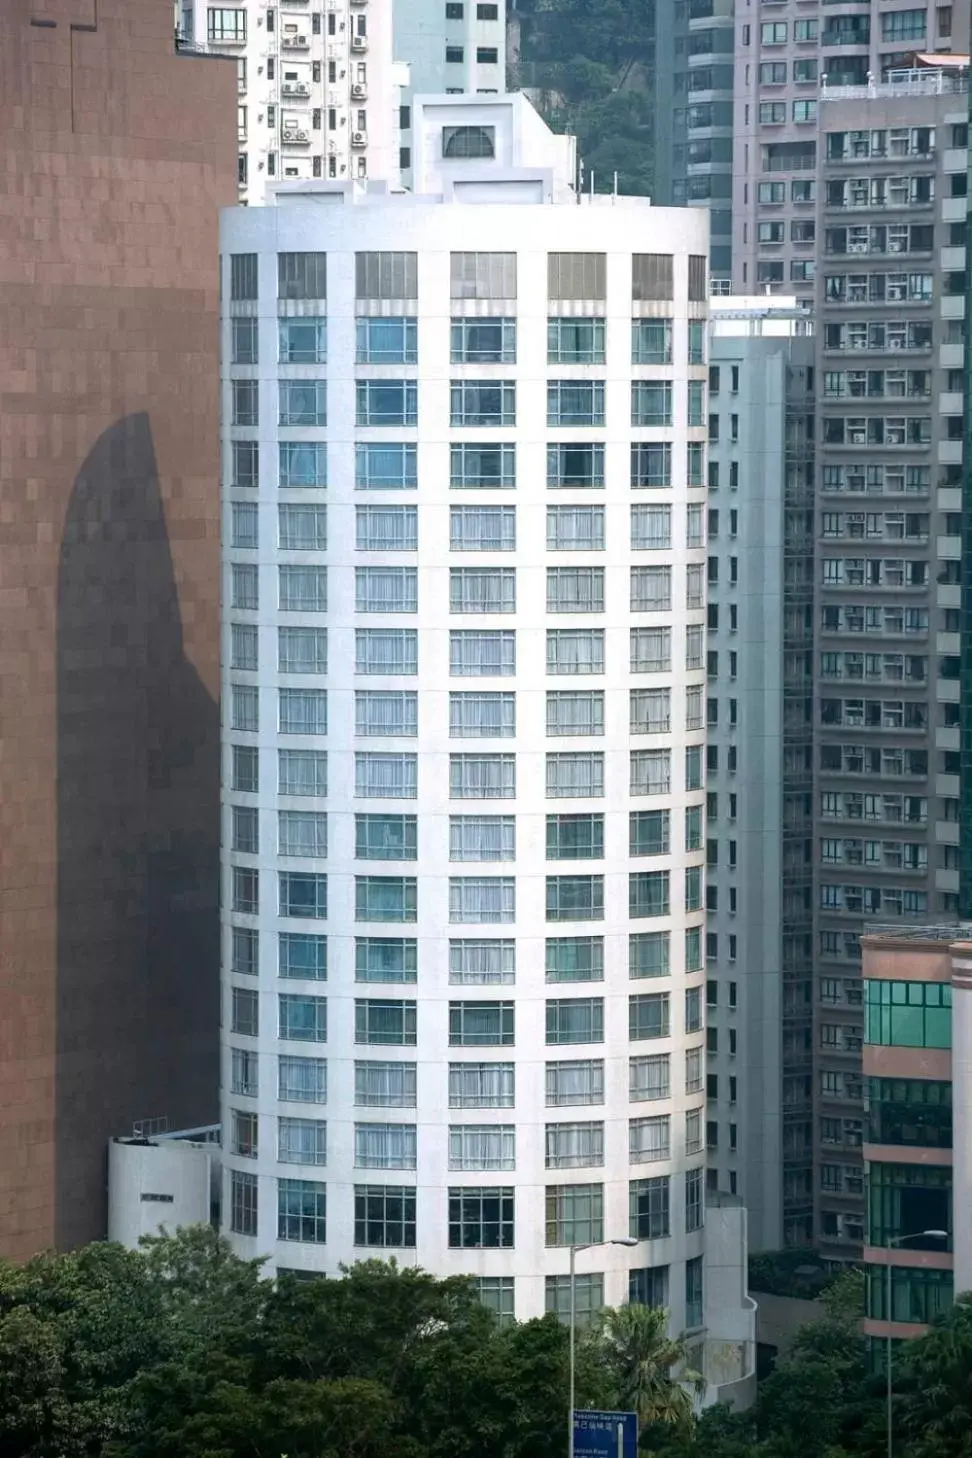 Property Building in Garden View Hong Kong